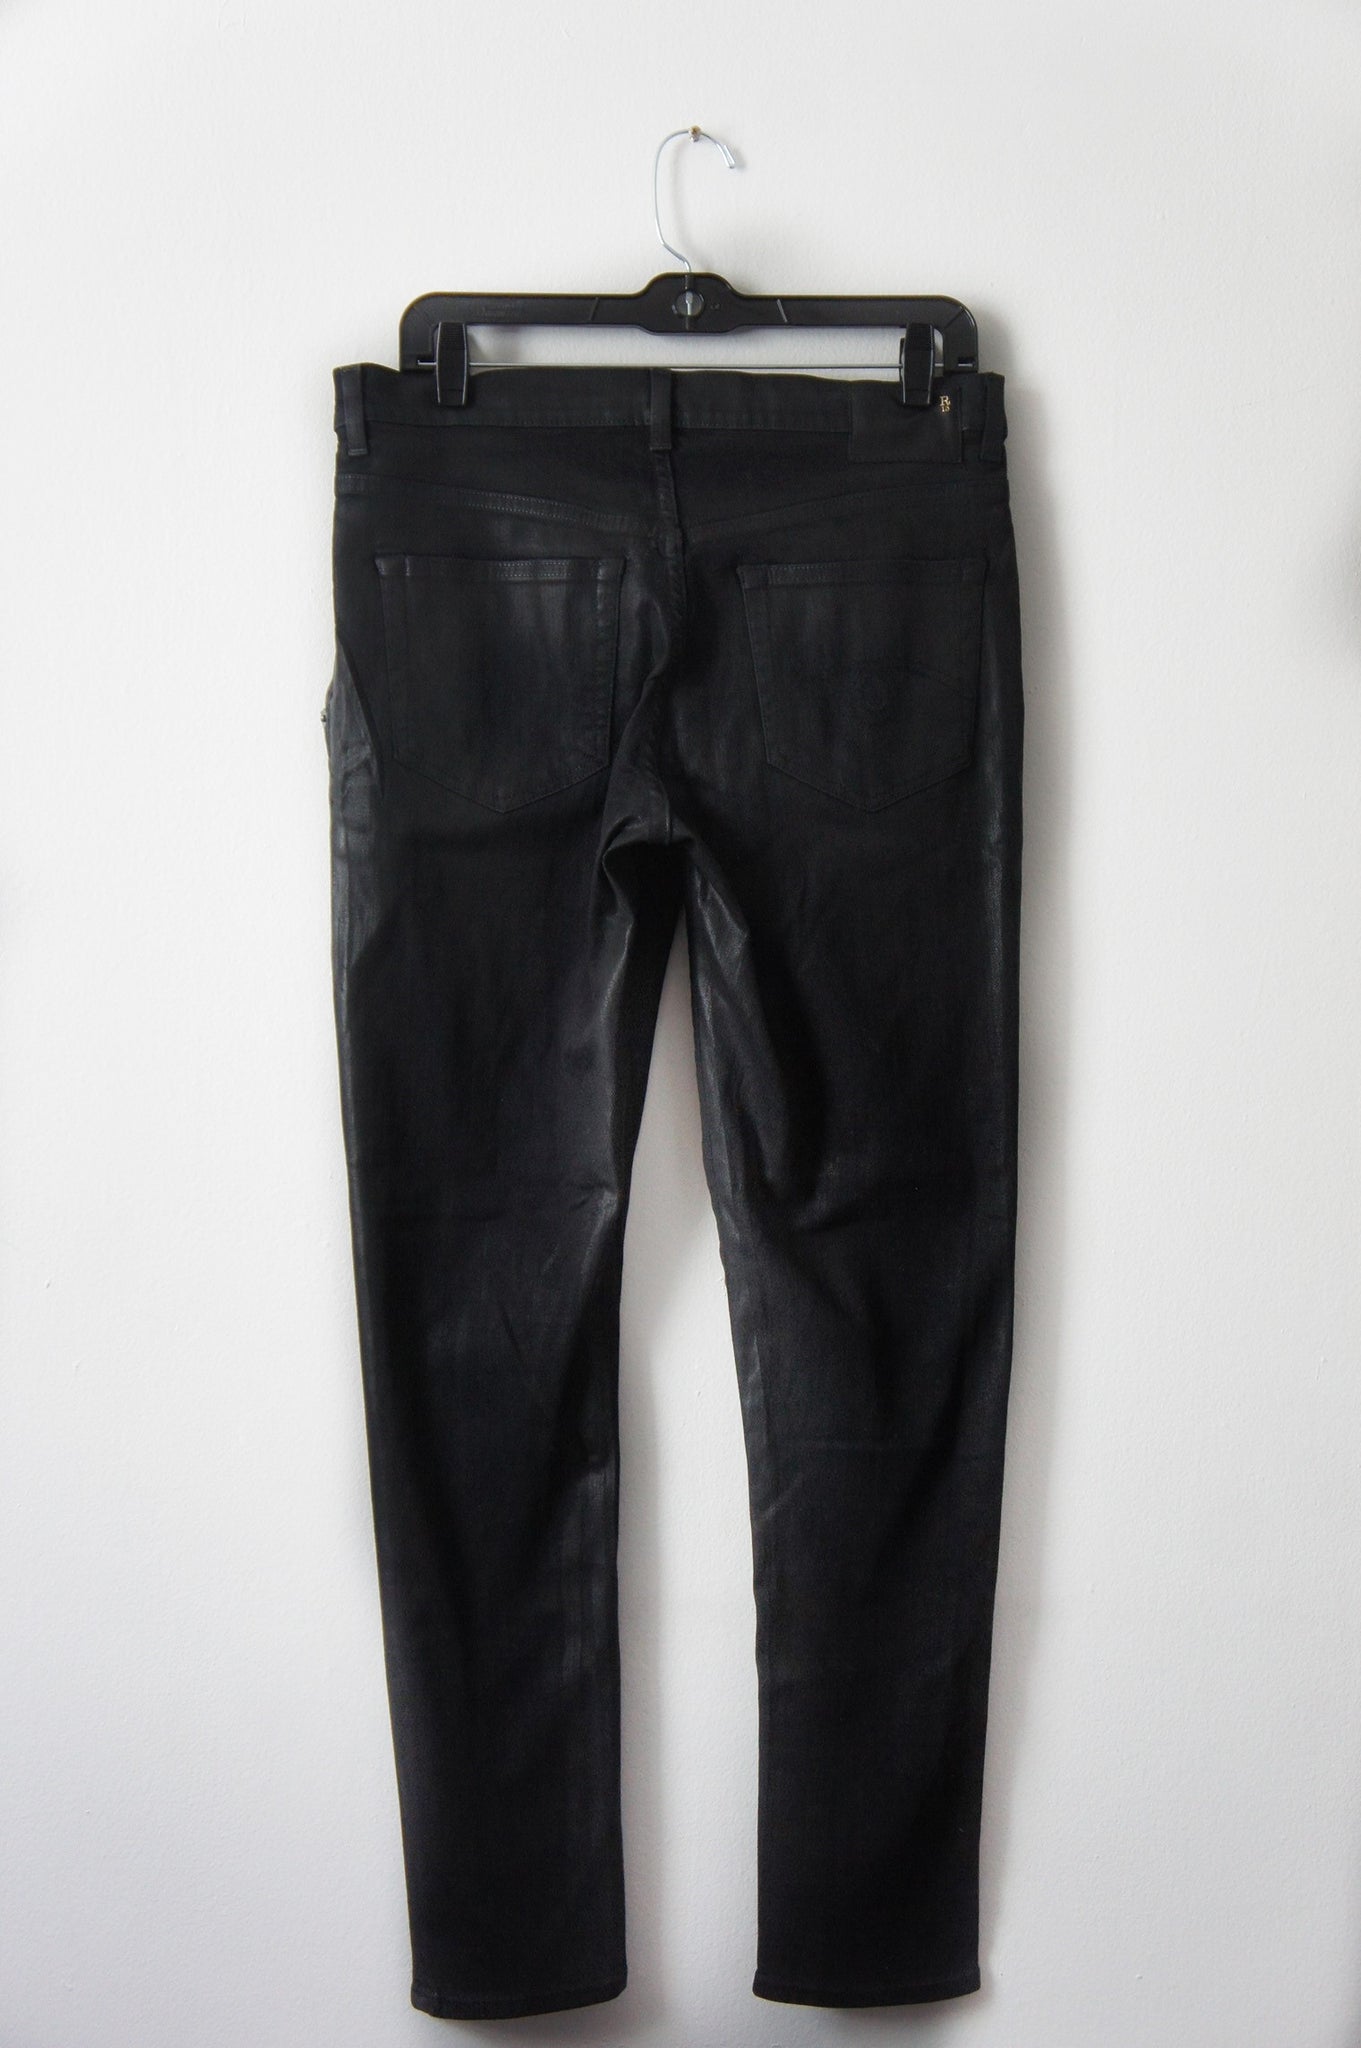 Uoverensstemmelse kit Due R13 x-over waxed black pants – AGN x 13